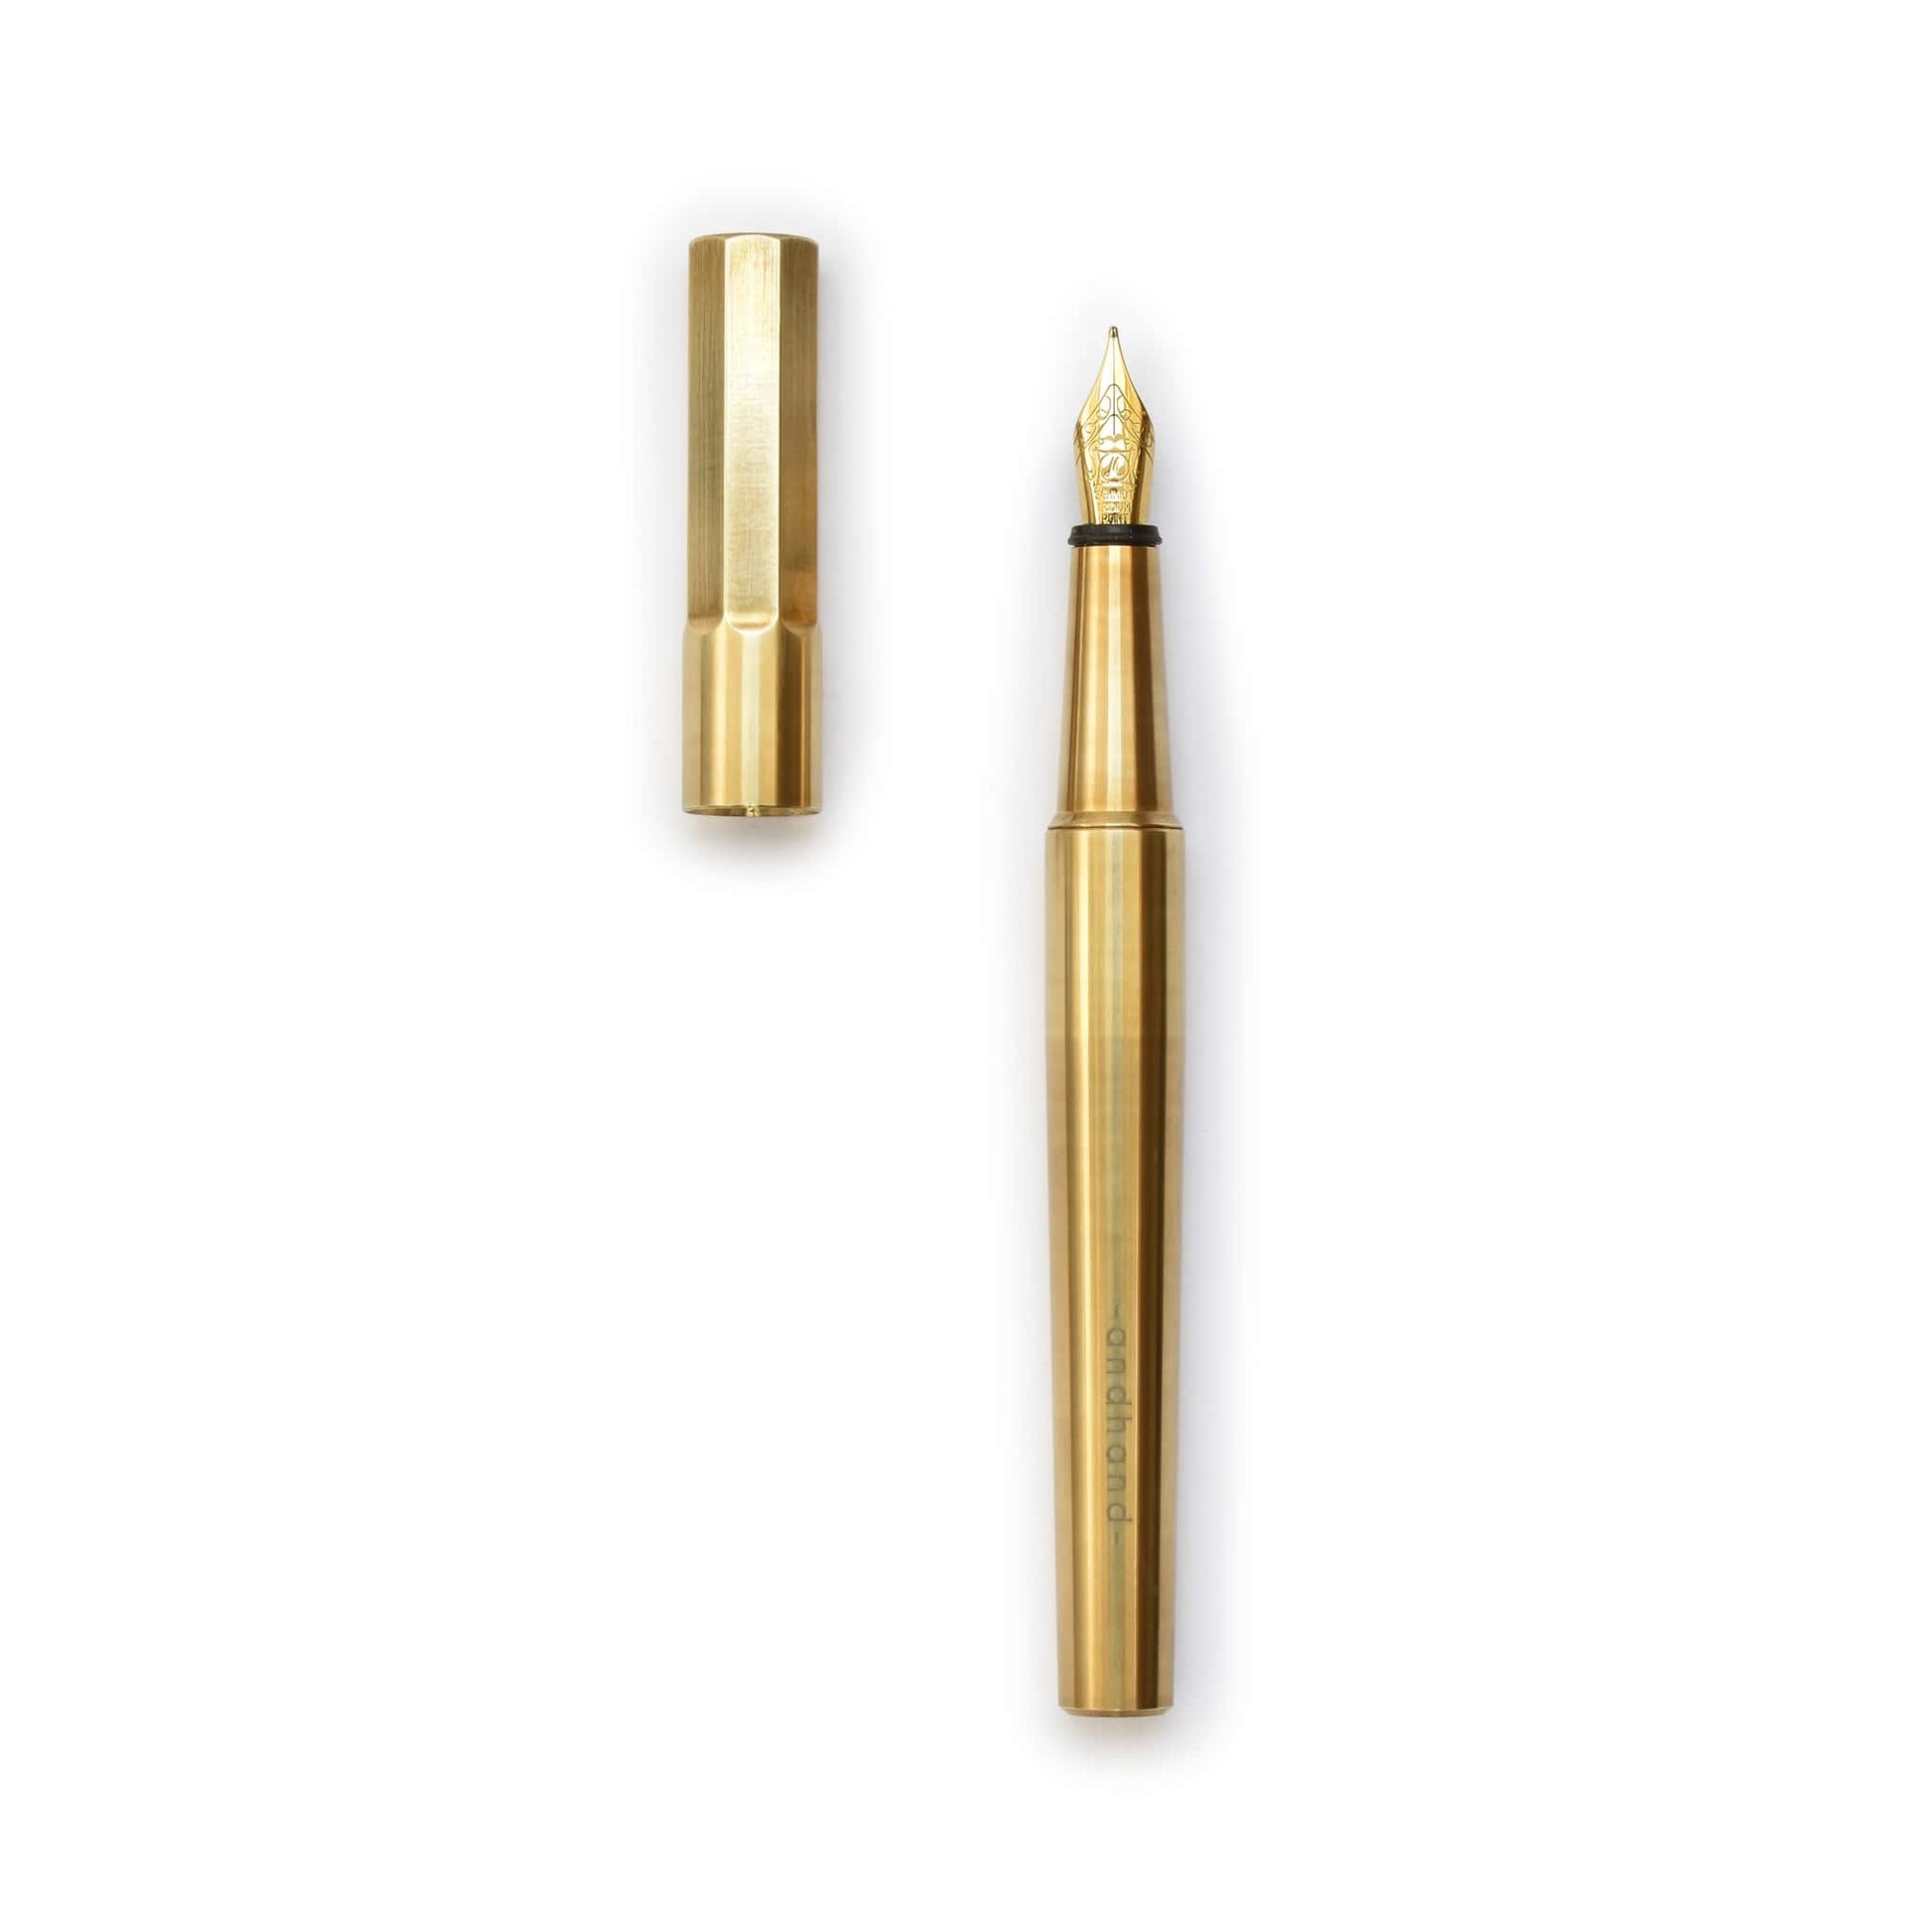 Fountain Pen Brass, Expert writing tool